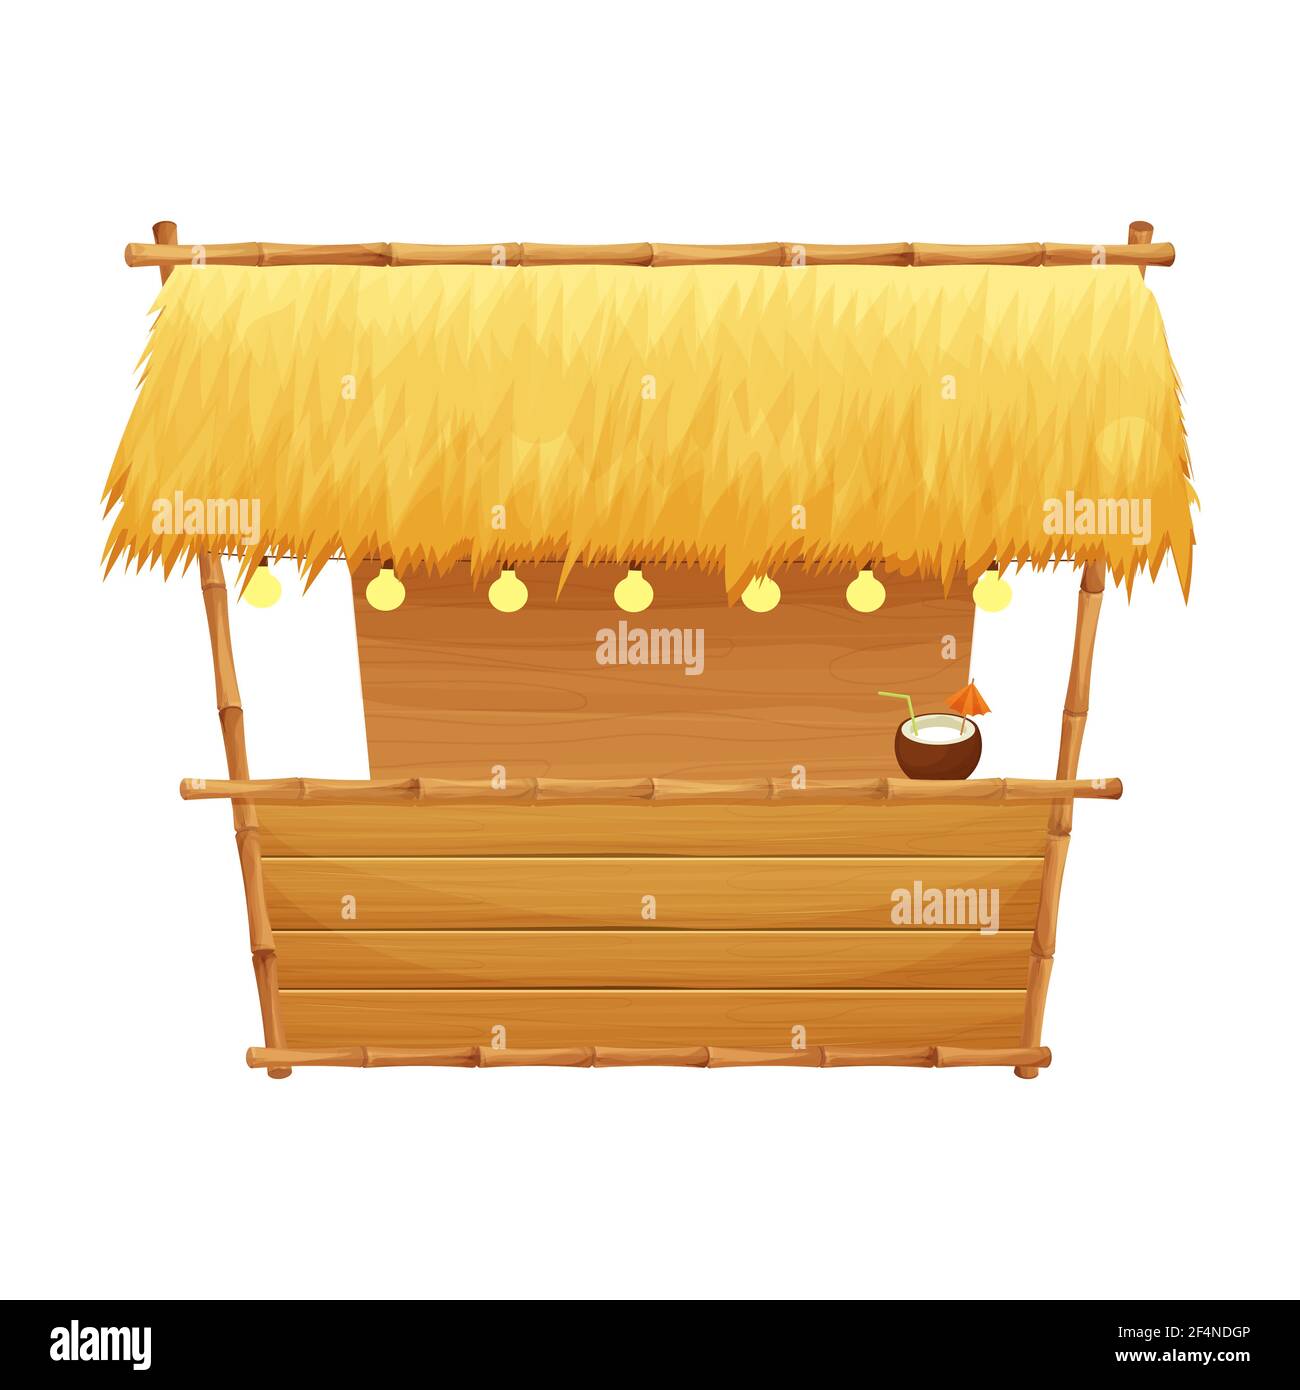 Summer Beach bar tiki in stile cartone animato isolato su sfondo bianco stock illustrazione vettoriale. Edificio semplice e retrò con dettagli in bambù e legno. Illustrazione Vettoriale